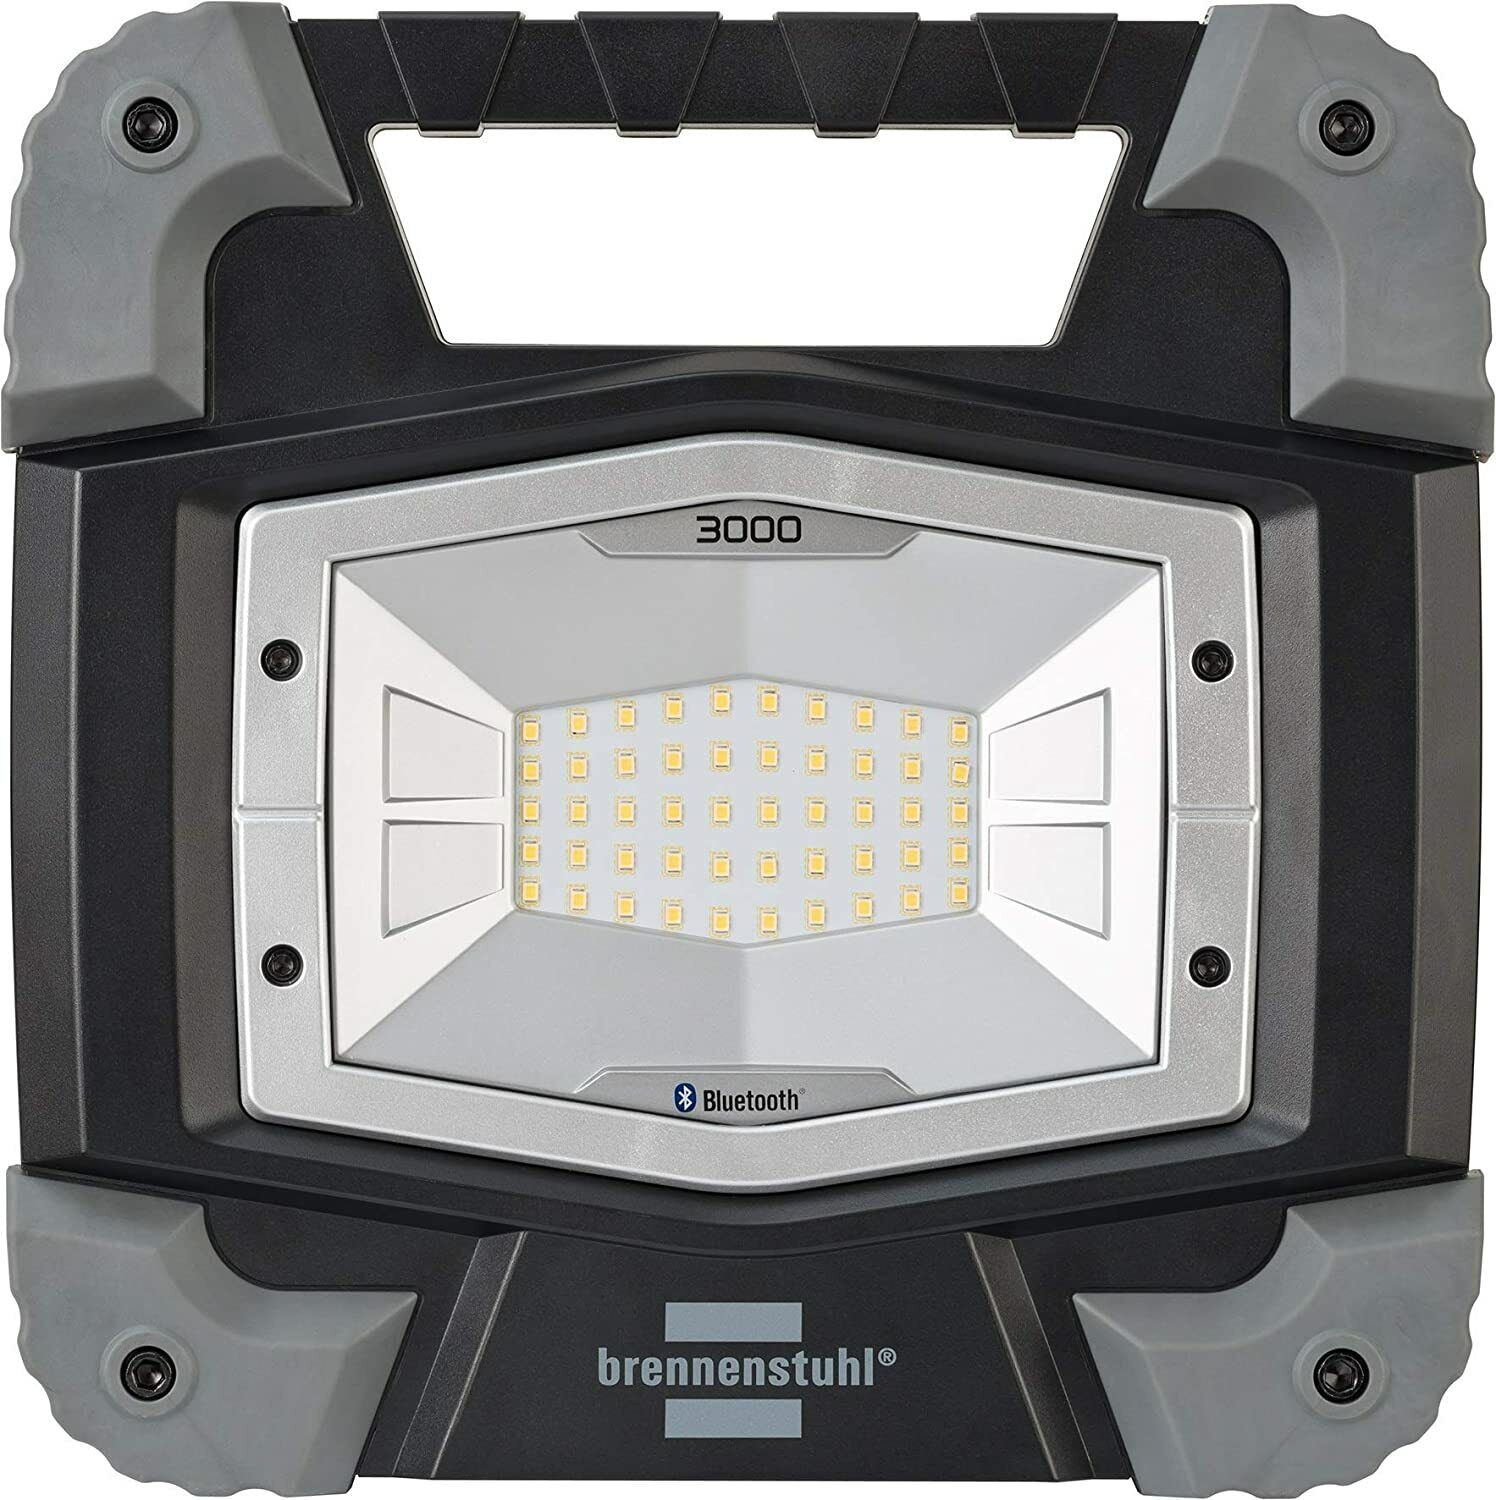 Bild zu Mobiler Bluetooth LED-Strahler Brennenstuhl Toran 3000 MB für 26,99€ (Vergleich: 42,95€)